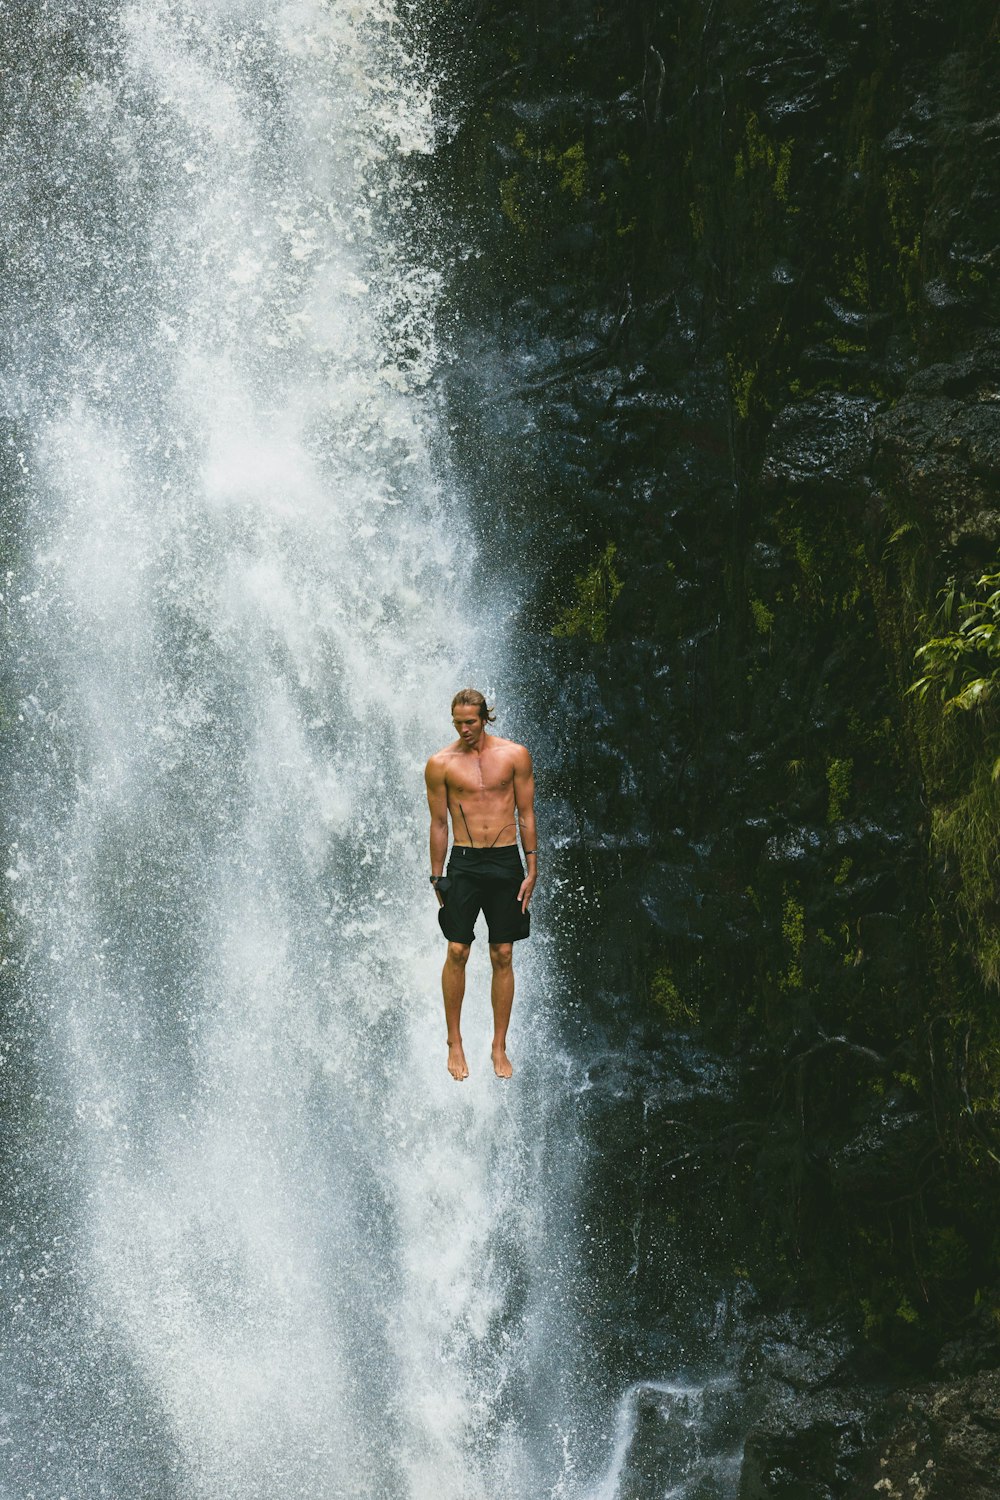 Homem salta em cachoeiras